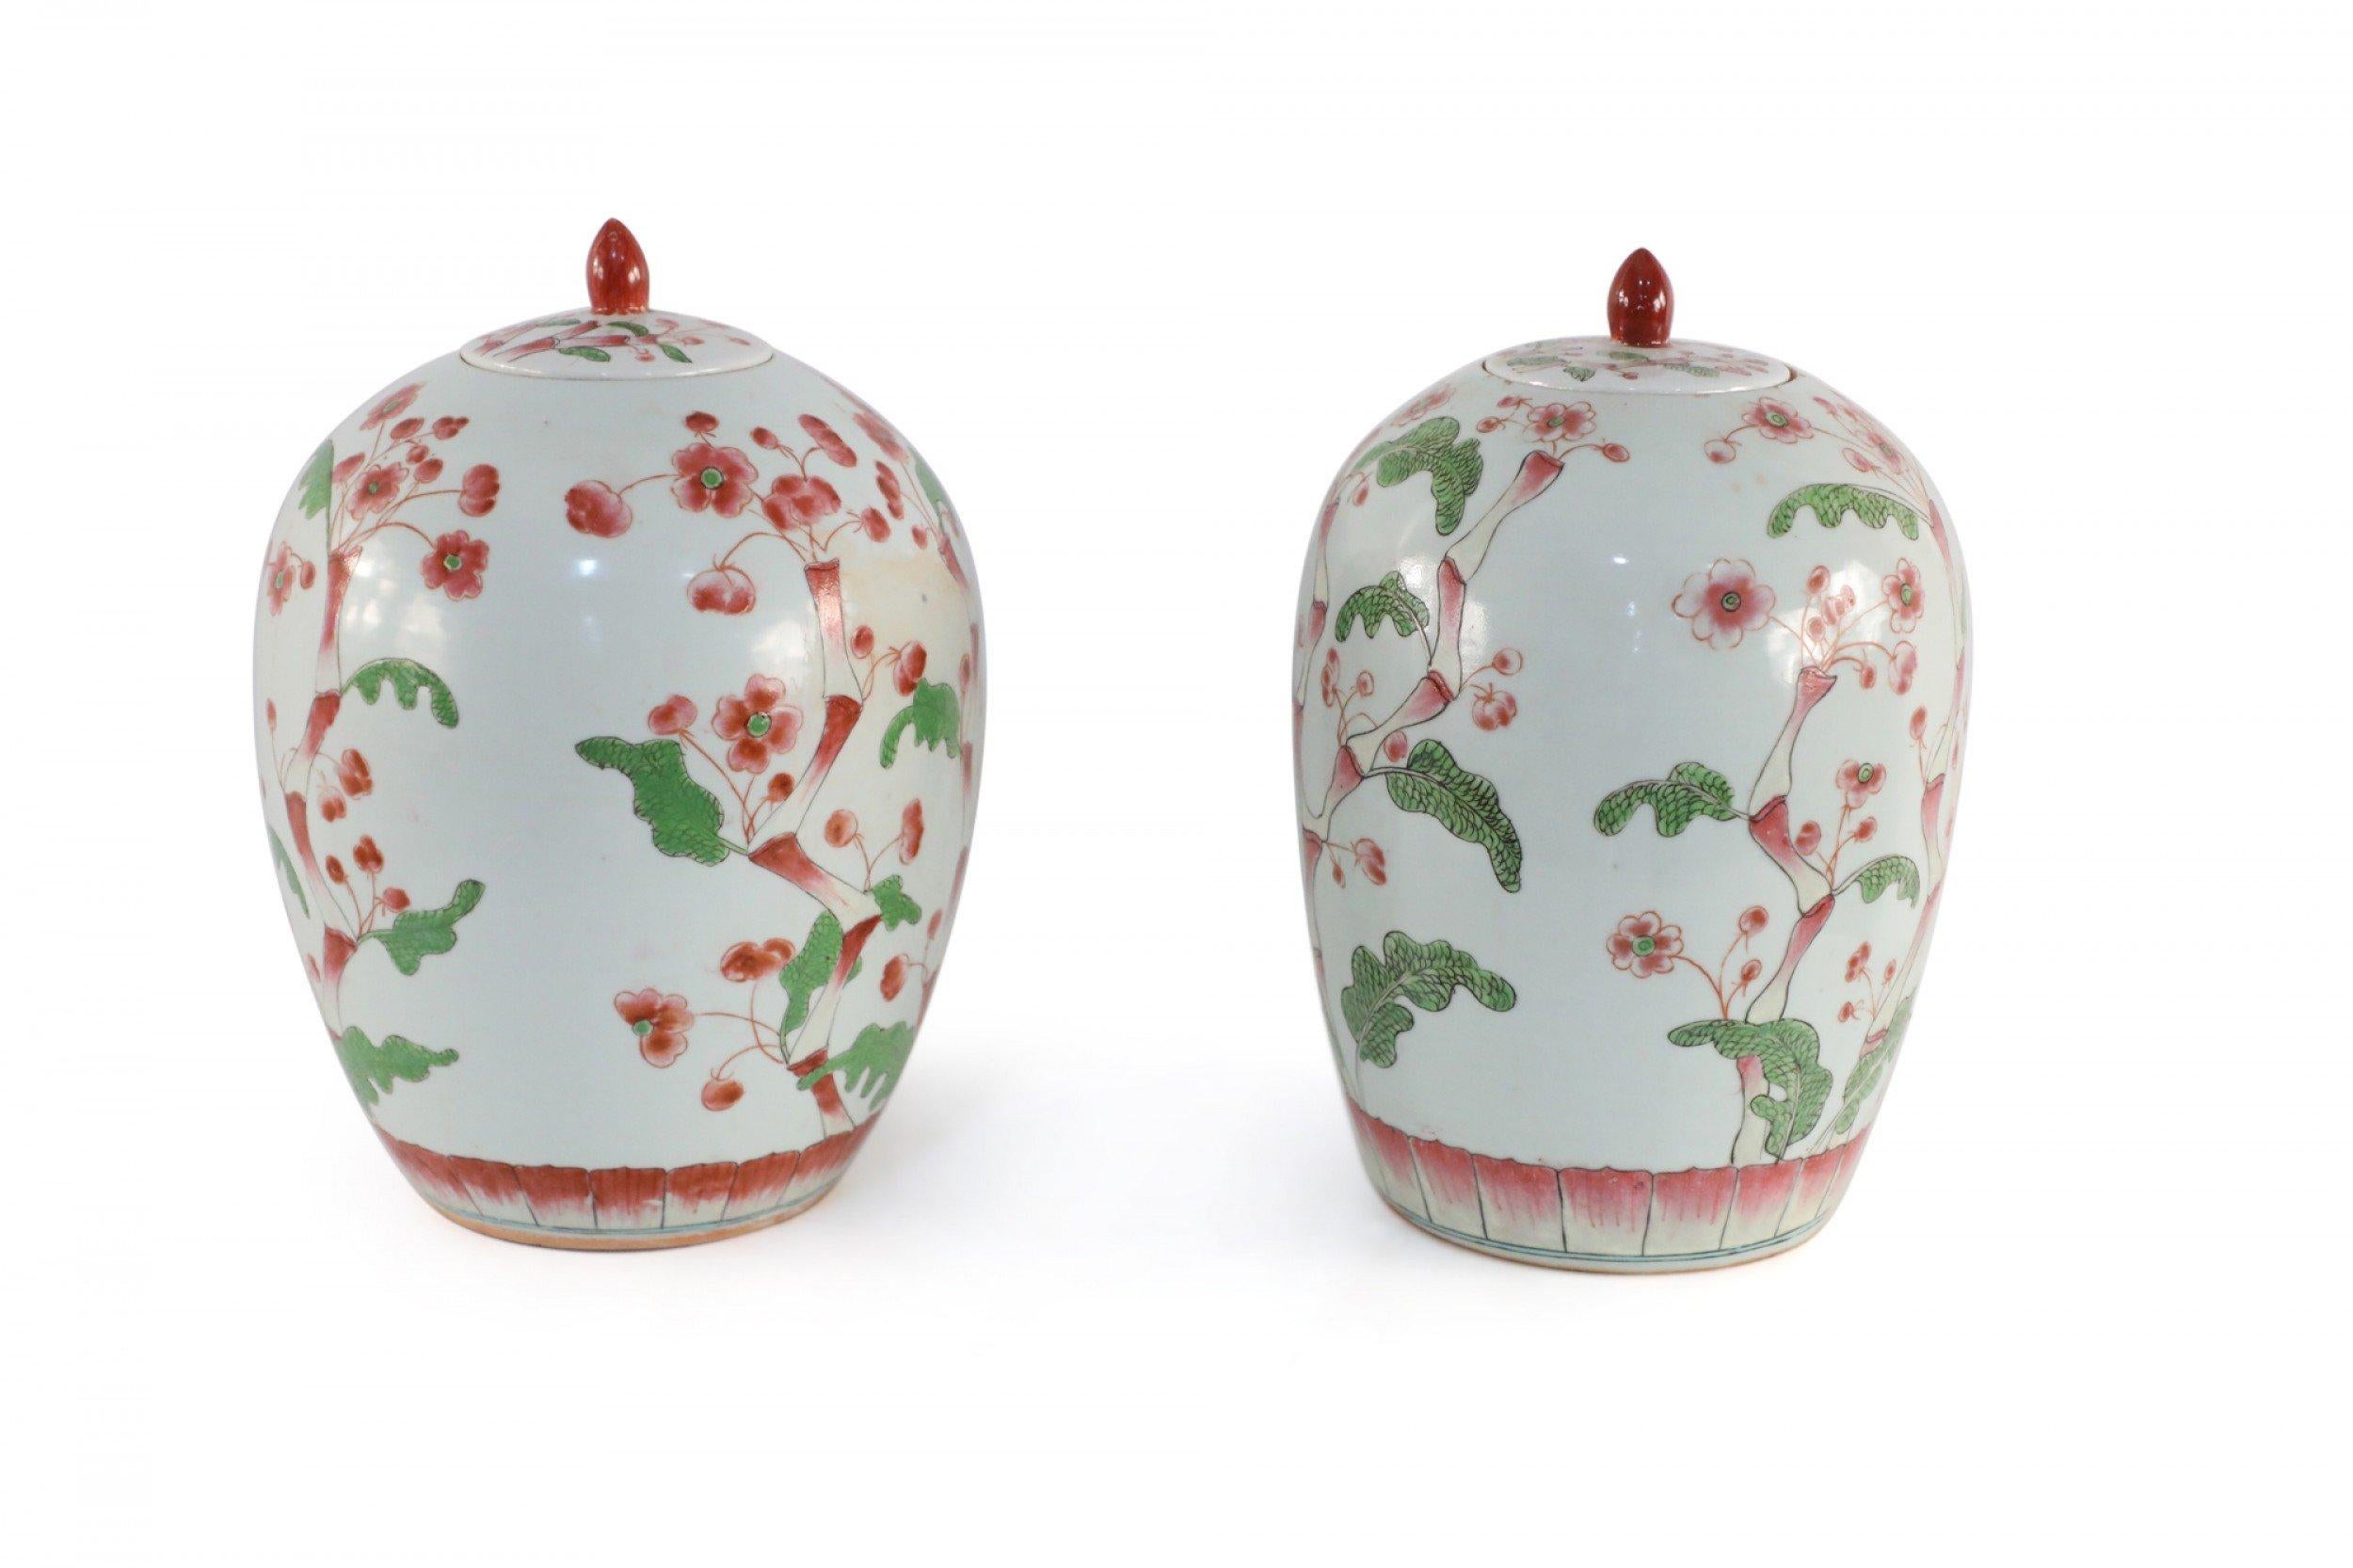 Paire d'urnes chinoises en porcelaine blanche décorées de fleurs de cerisier rose foncé et vertes poussant sur les formes arrondies, terminées par des couvercles à fleur rouge et percées de trous dans les bases (prix de la paire).
      